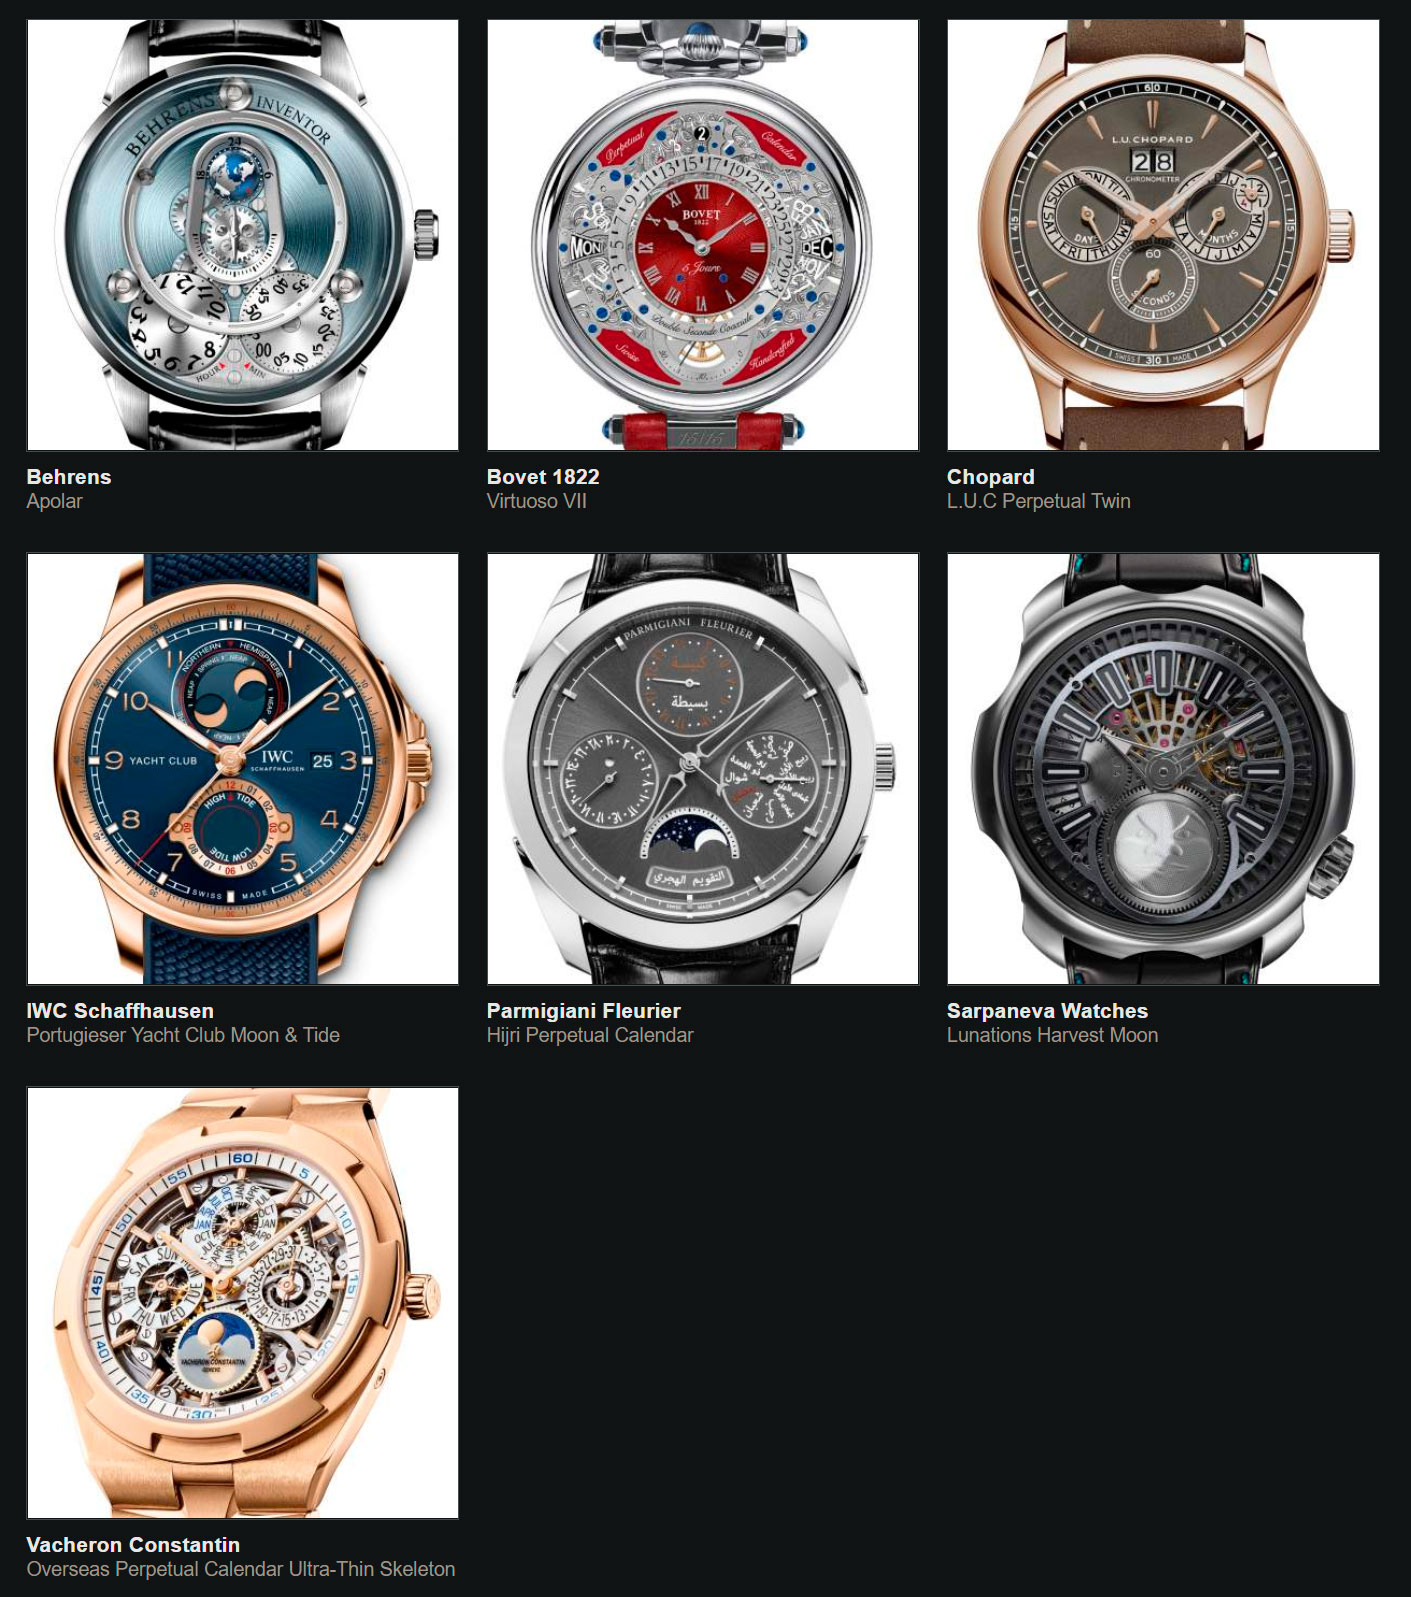 Relojes preseleccionados para el Gran Premio de Relojería de Ginebra 2020 Calendario y Astronomía